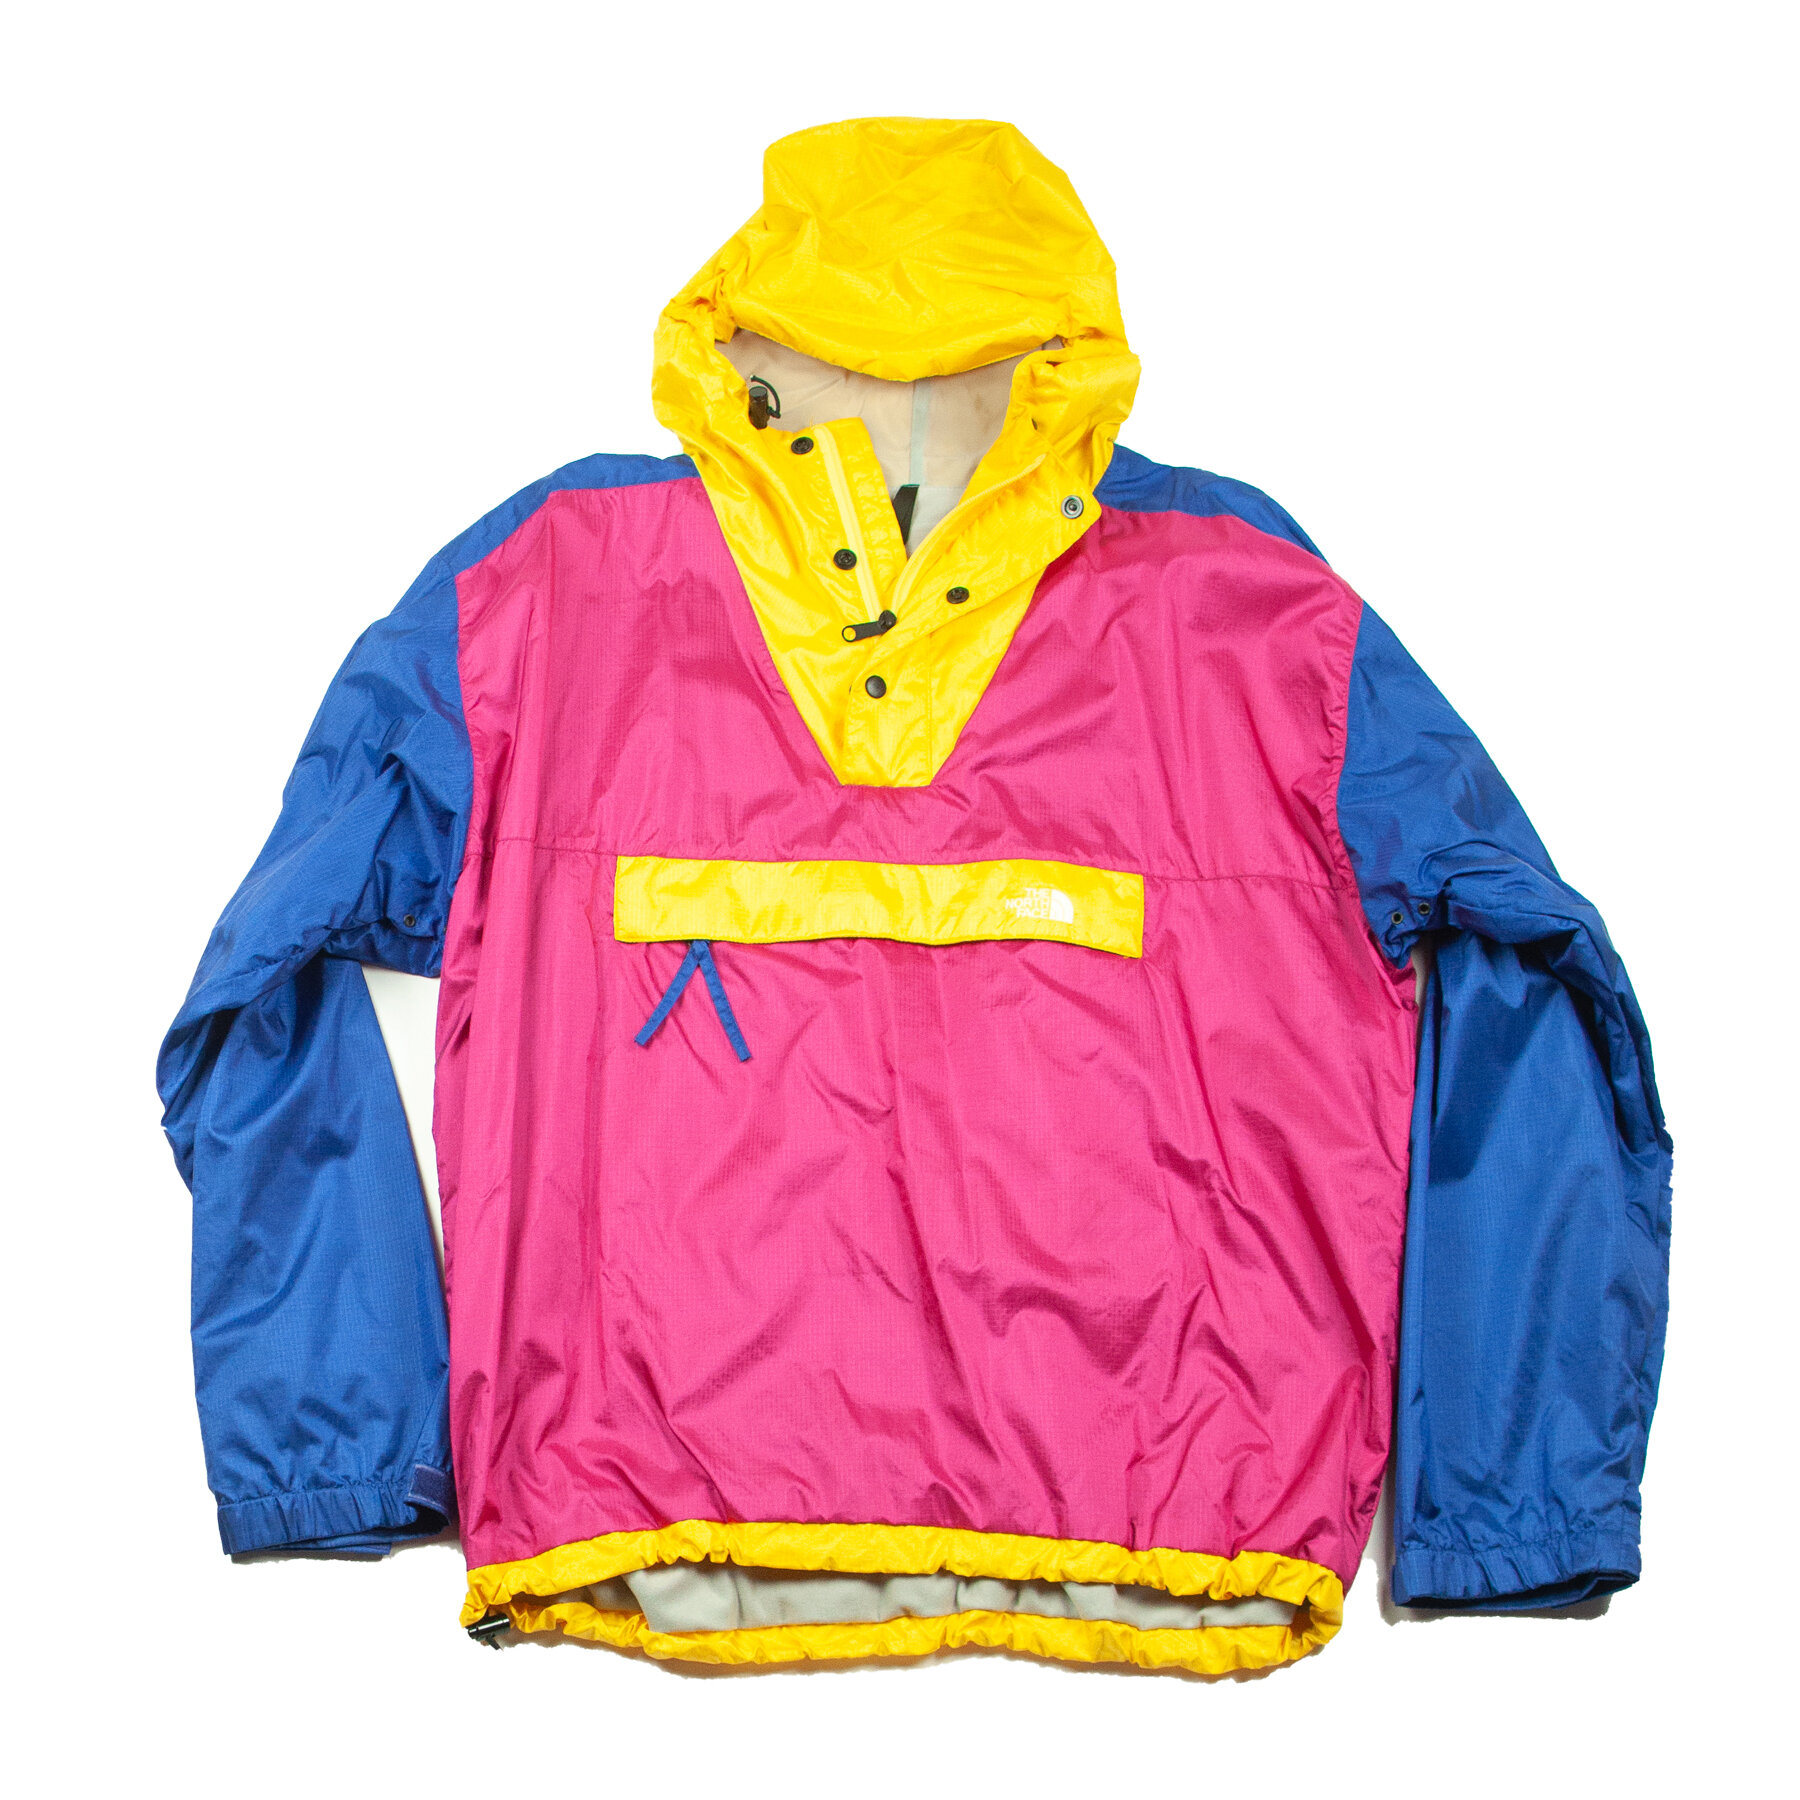 vintage north face ski jacket